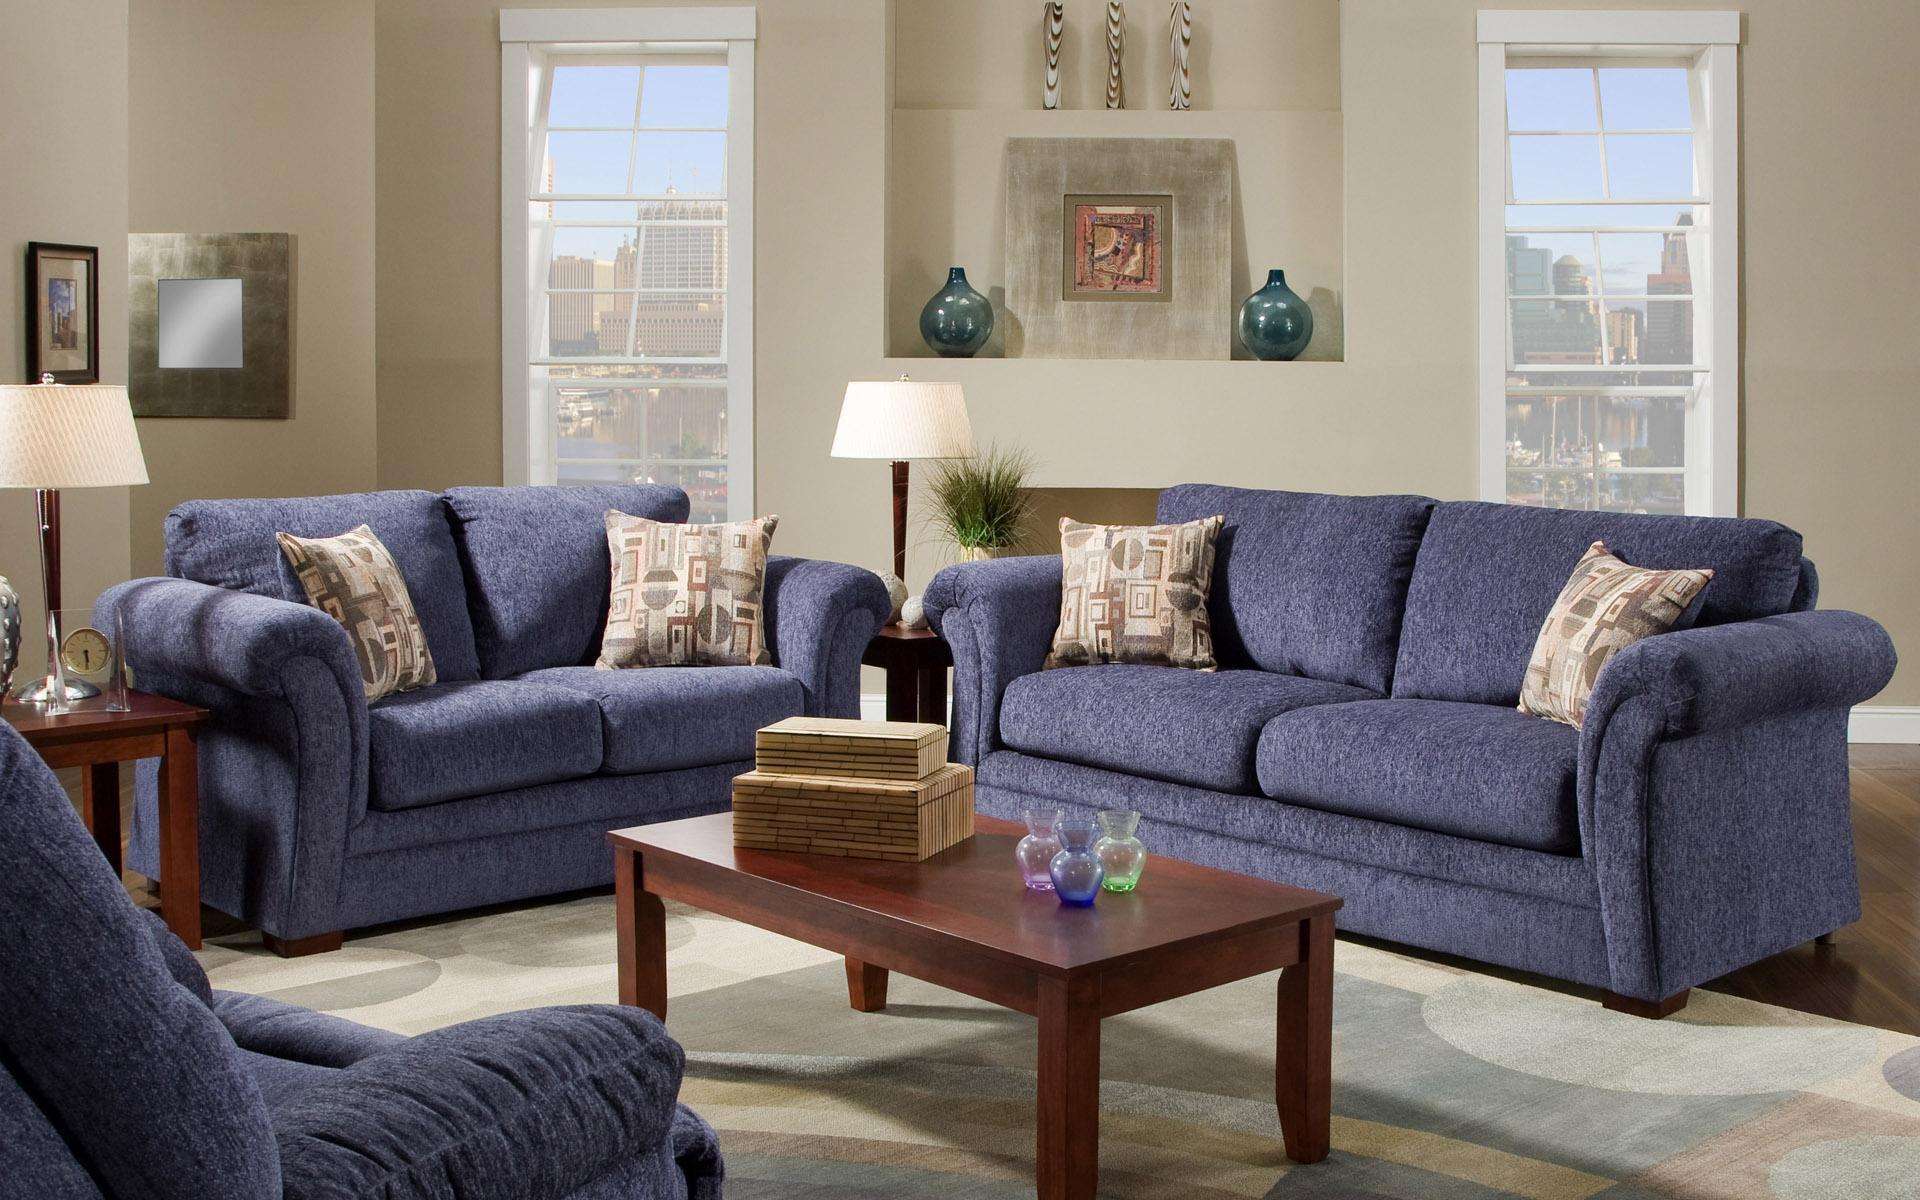 Как сочетать диван и кресла, советы дизайнеров